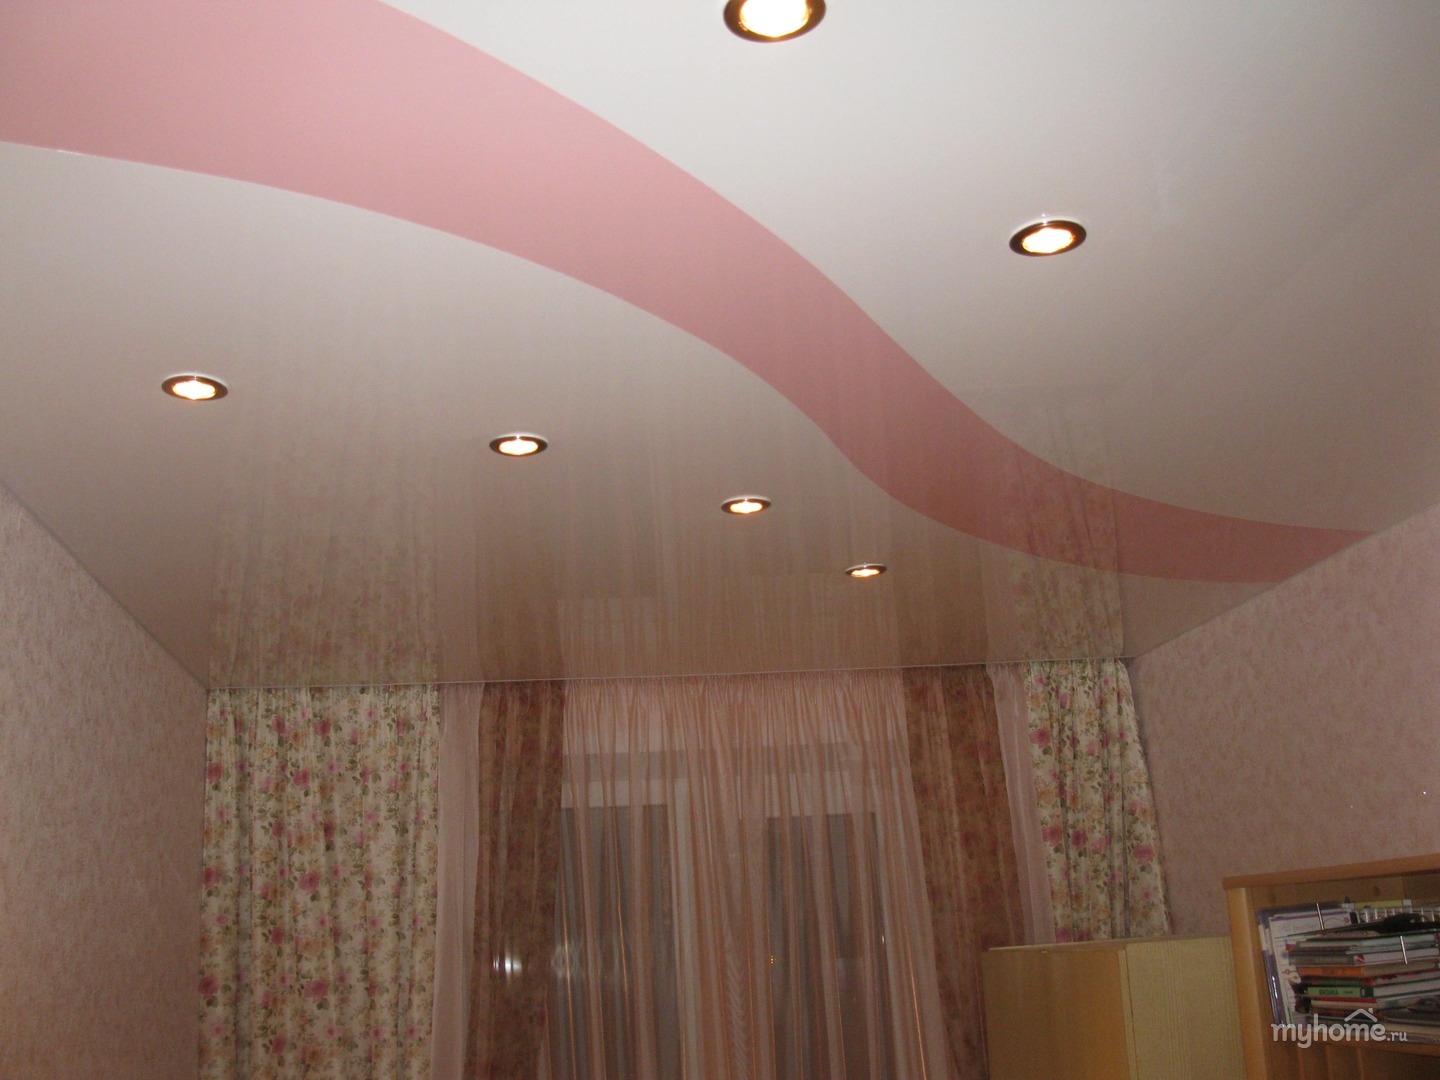 Двухцветные натяжные потолки: фото, спайка швов и дизайн двух цветов полотен